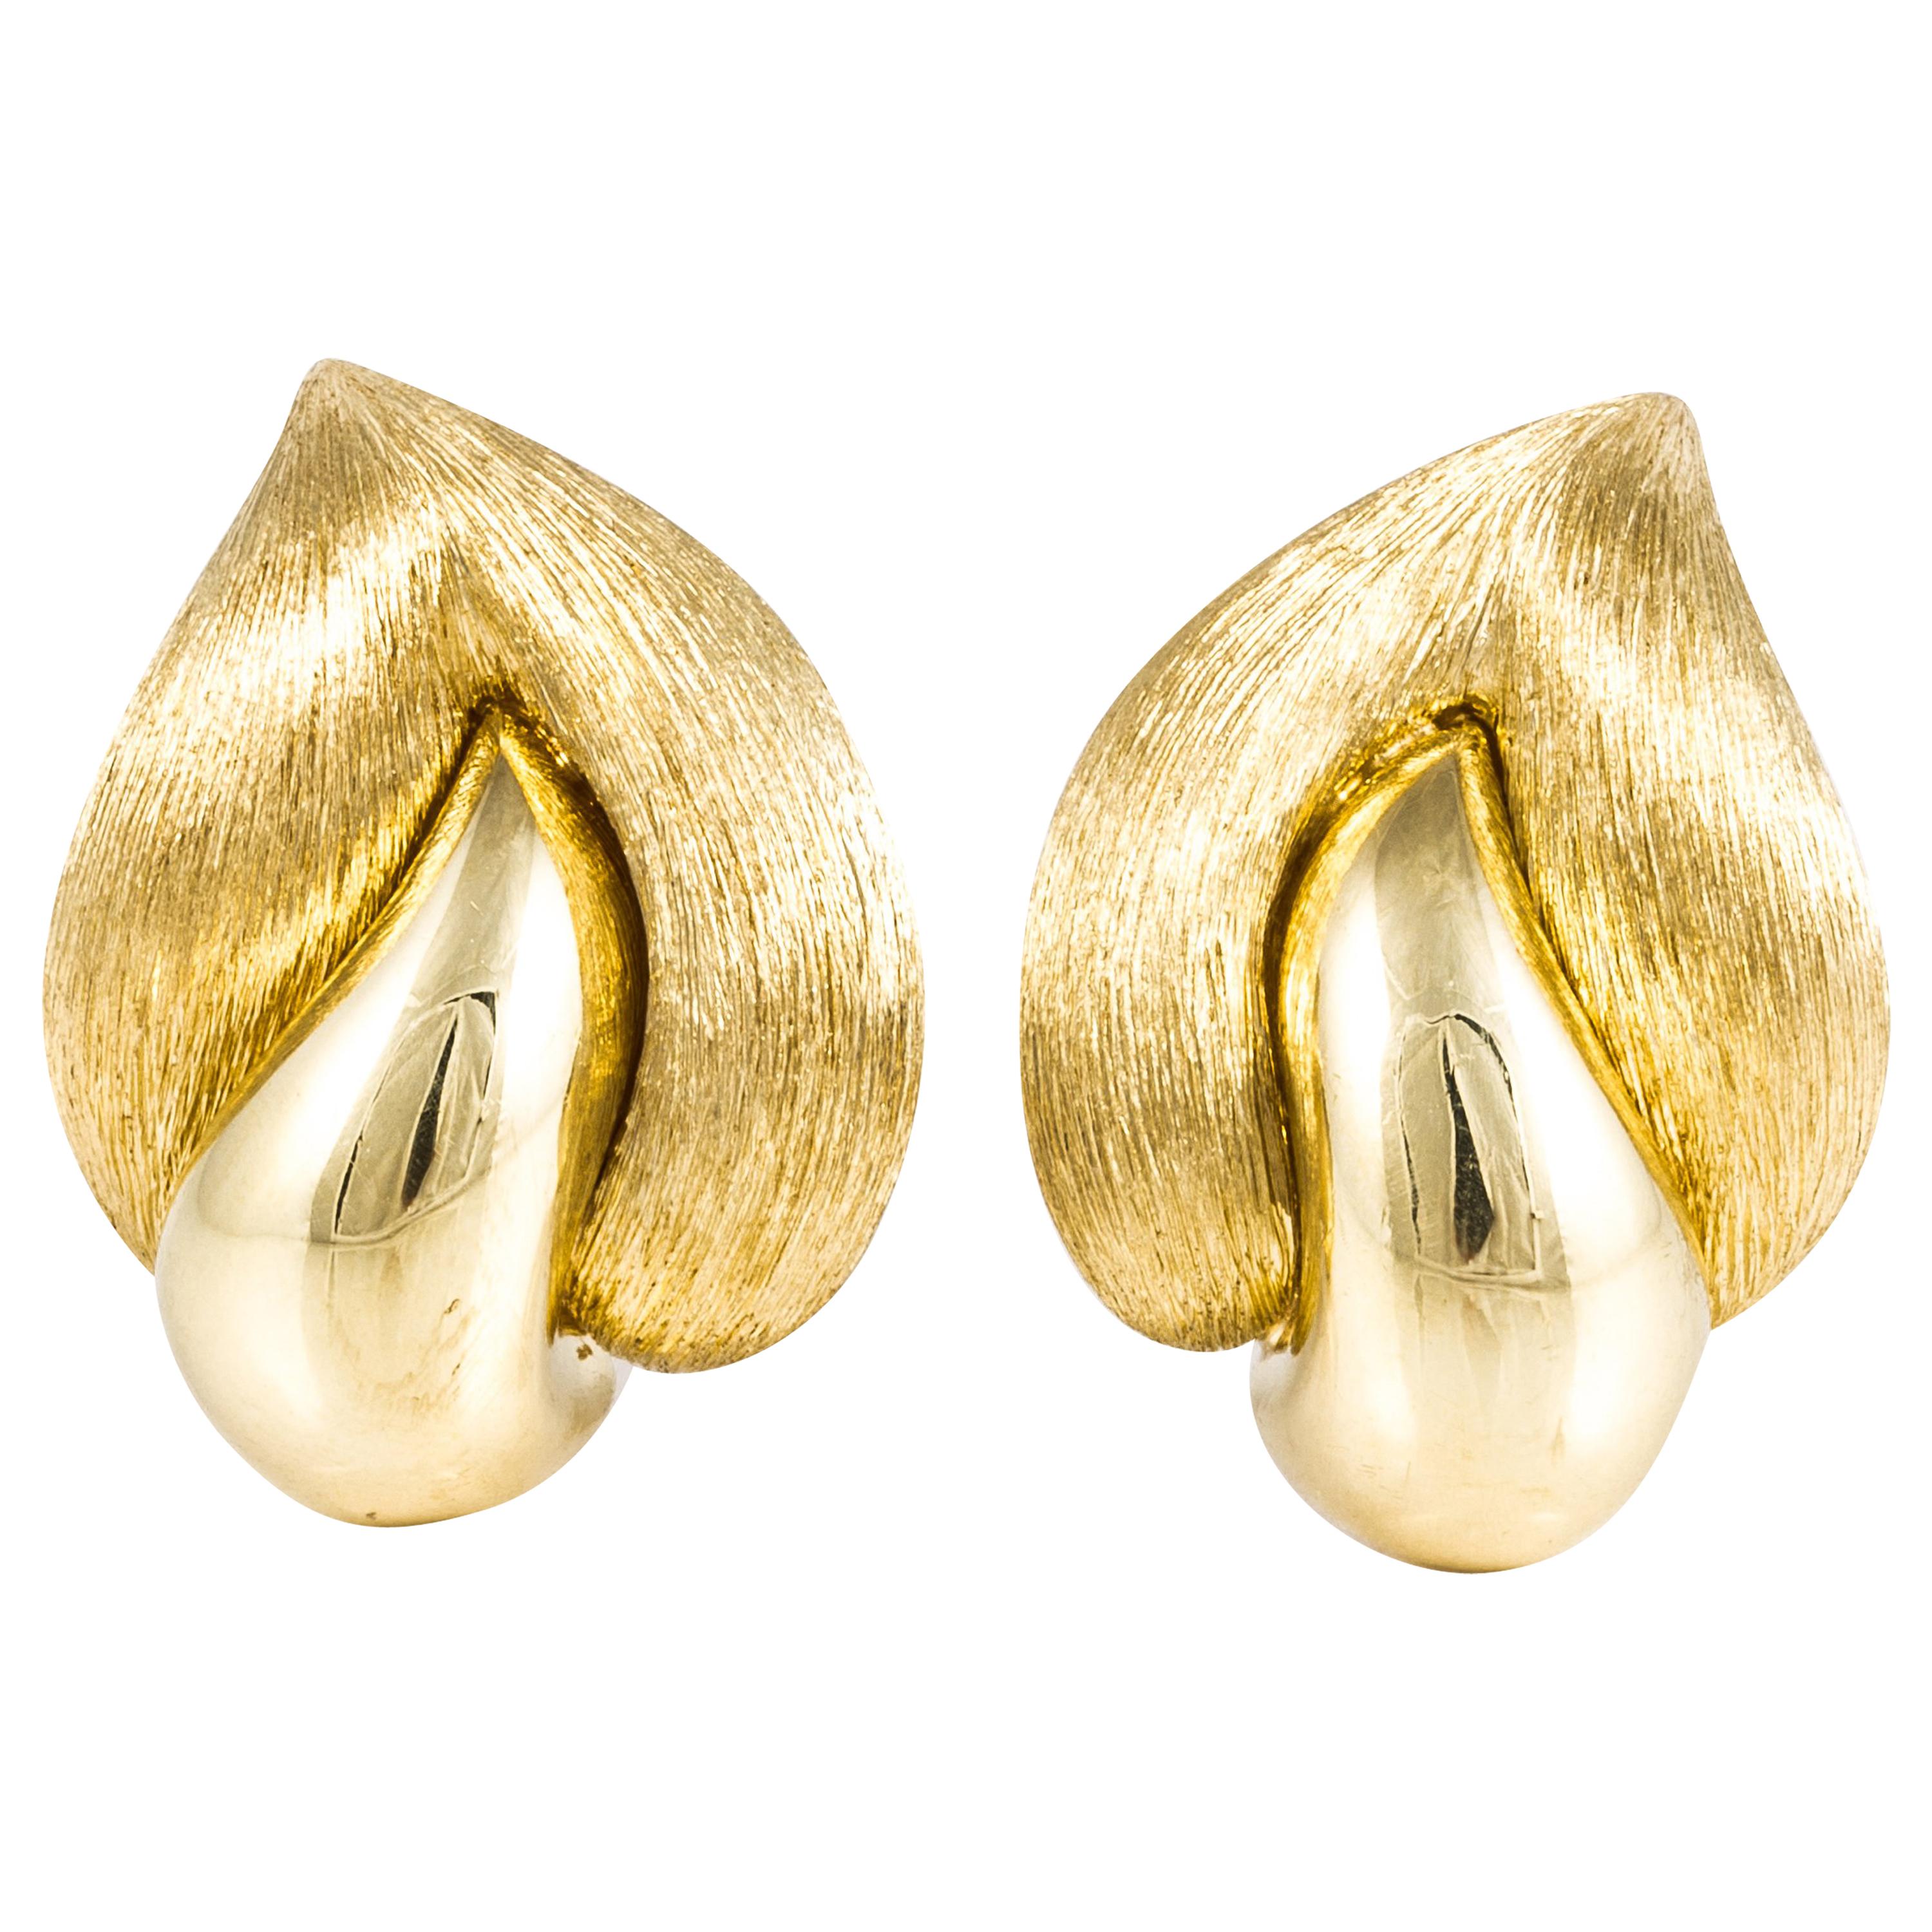 Henry Dunay Sabi Earrings in 18K Gold